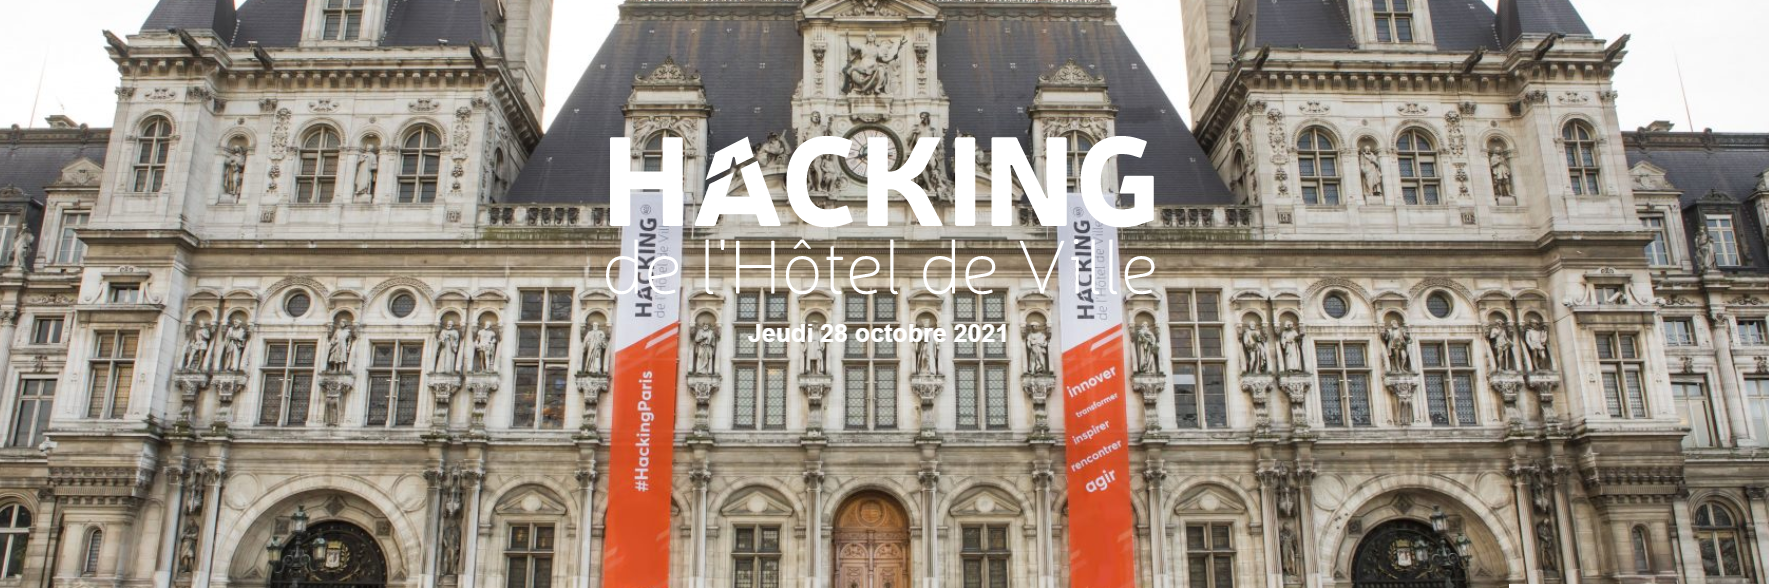 Hacking de l'Hôtel de Ville - Paris